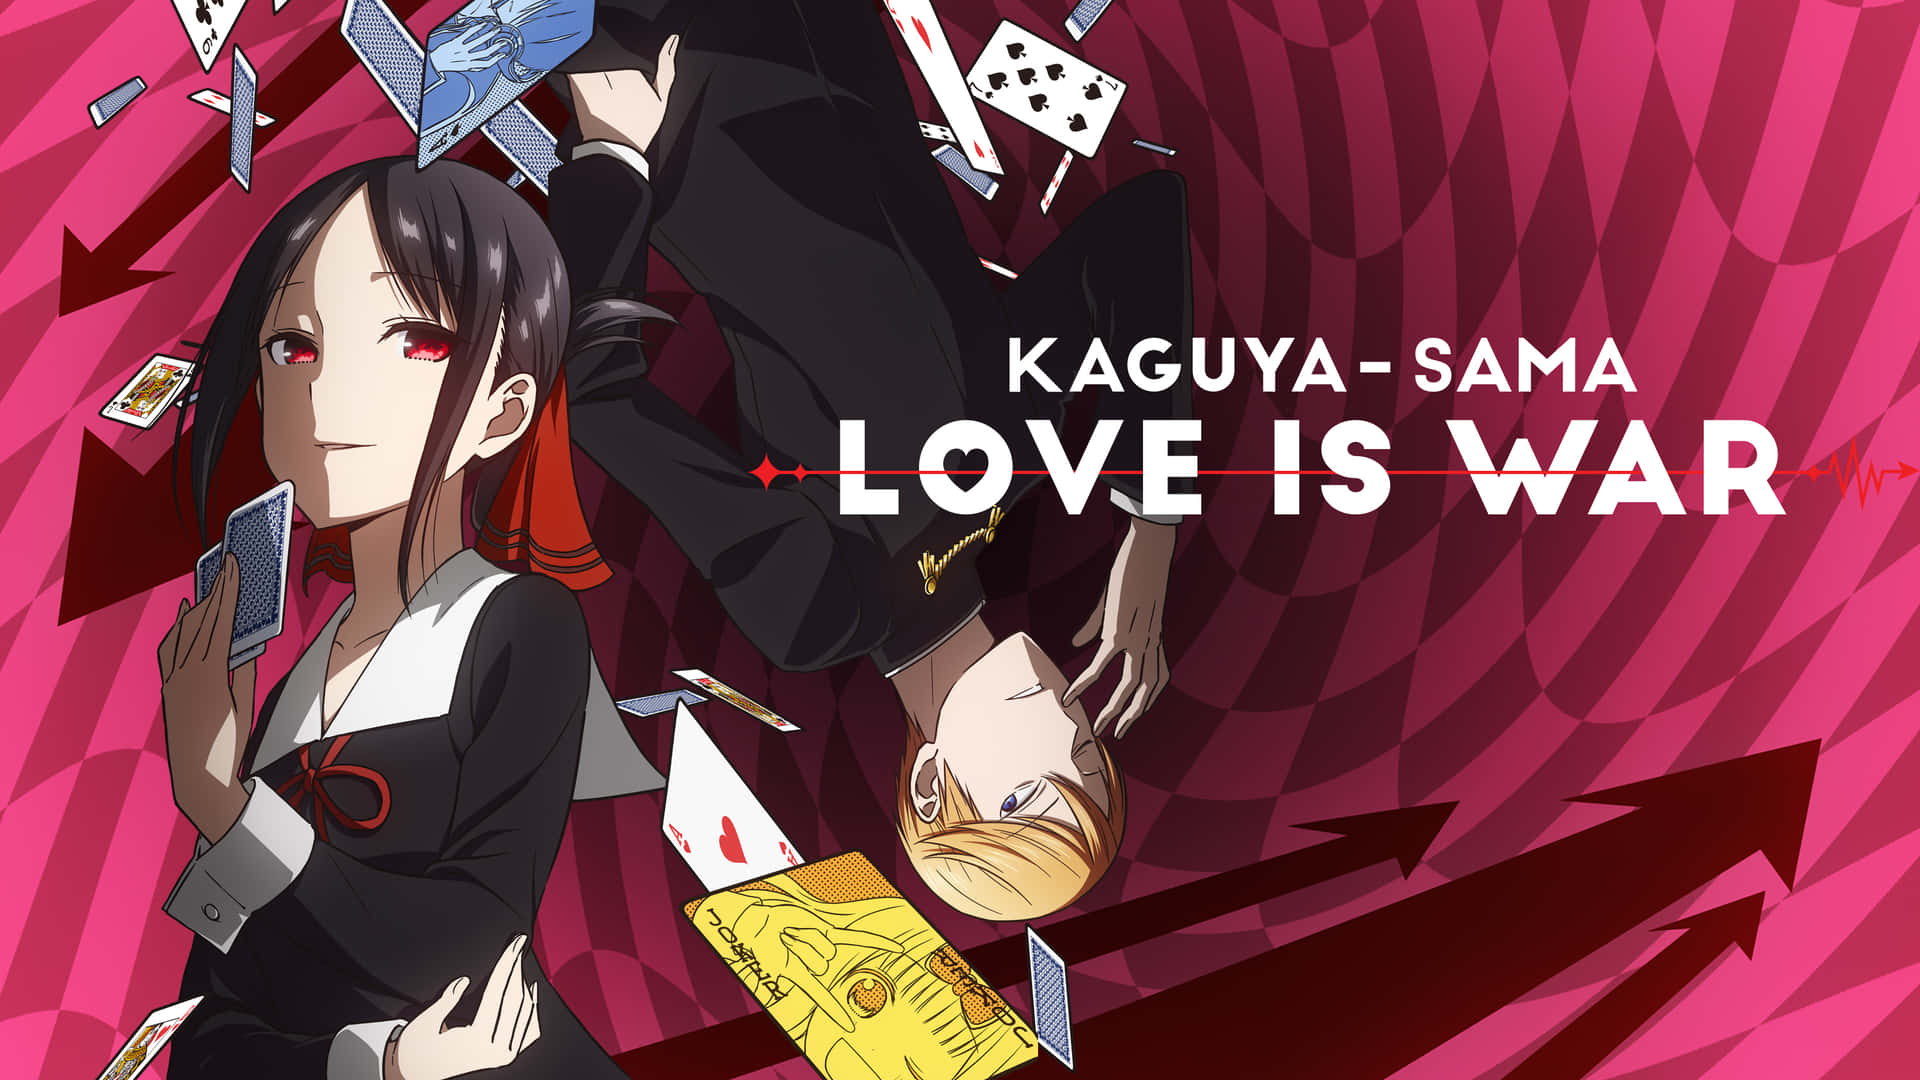 Anime Kaguyasama Love is War 4k Ultra HD Wallpaper by Shyrose